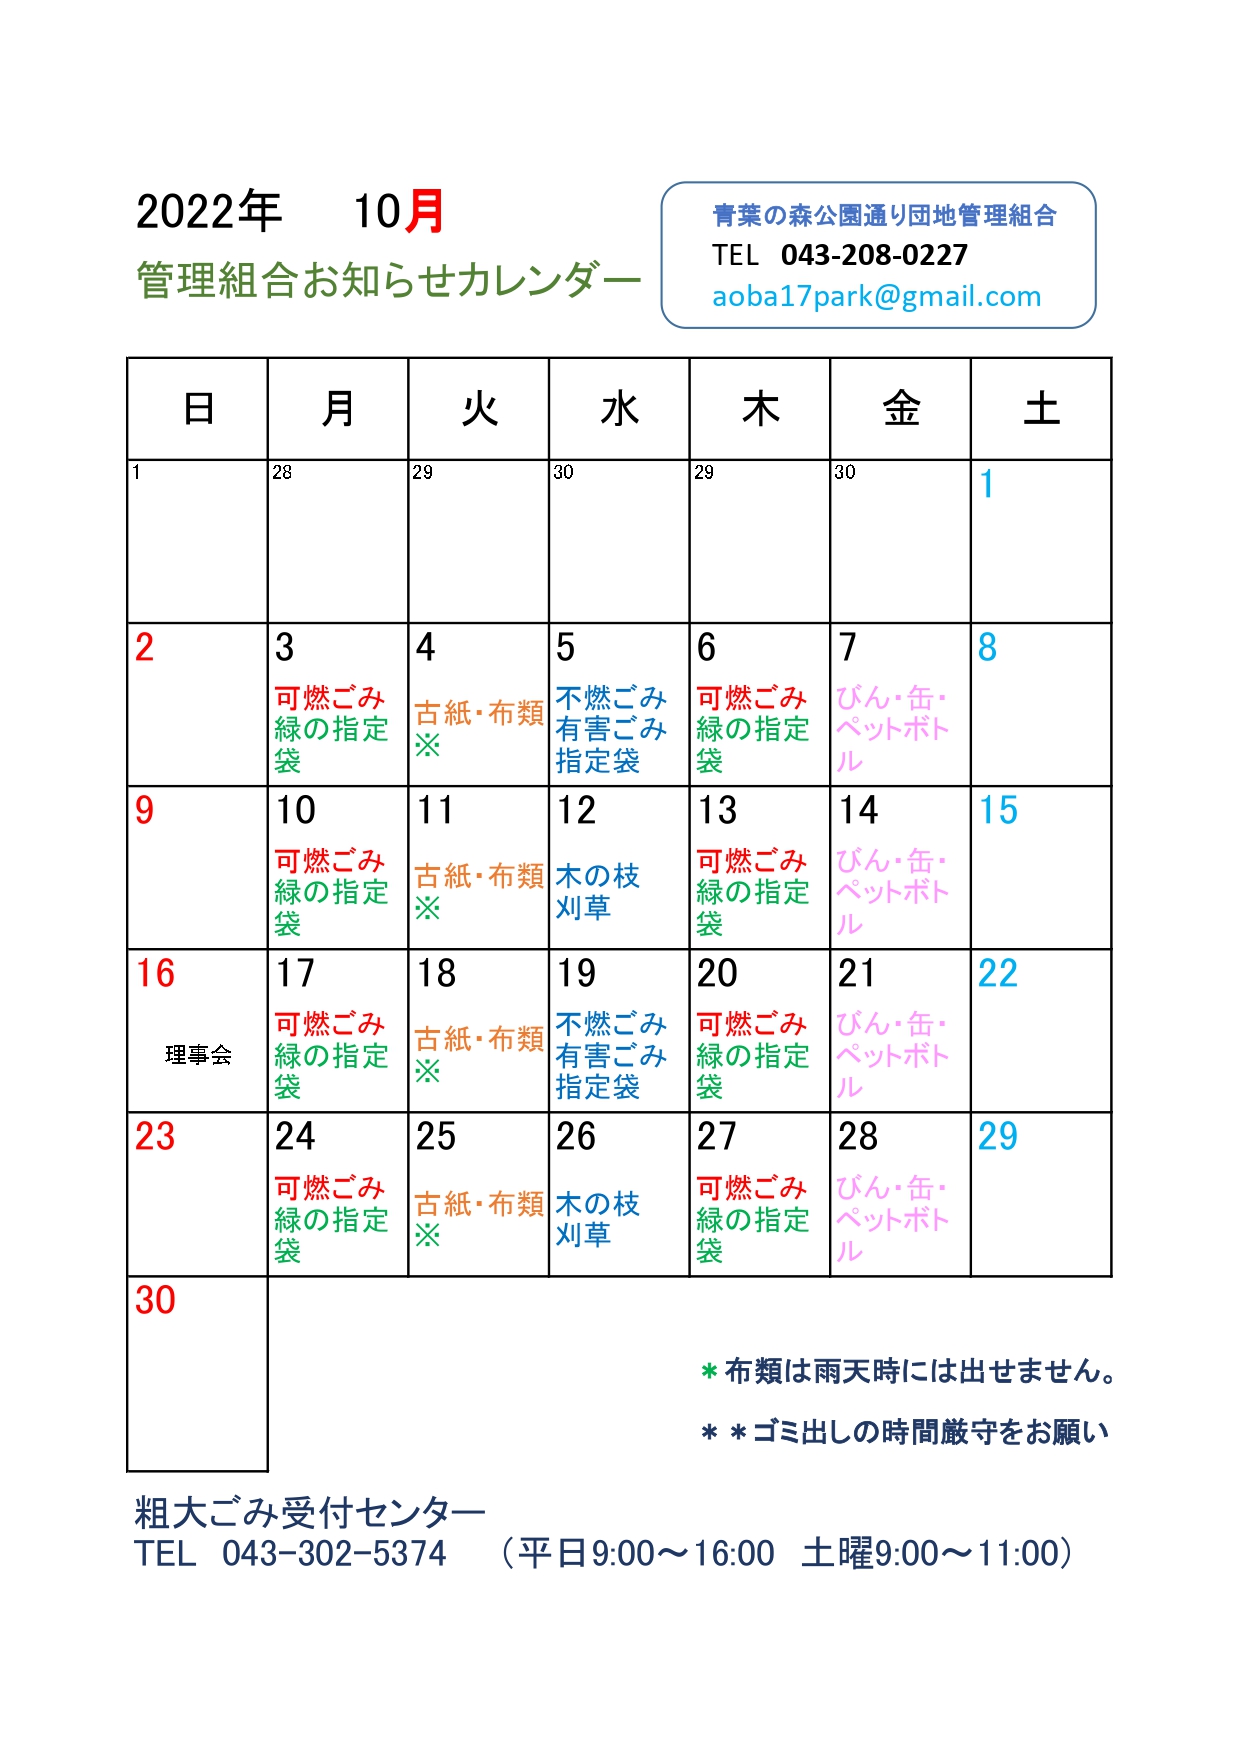 令和4年お知らせカレンダー(理事会追加）_page-0001.jpg